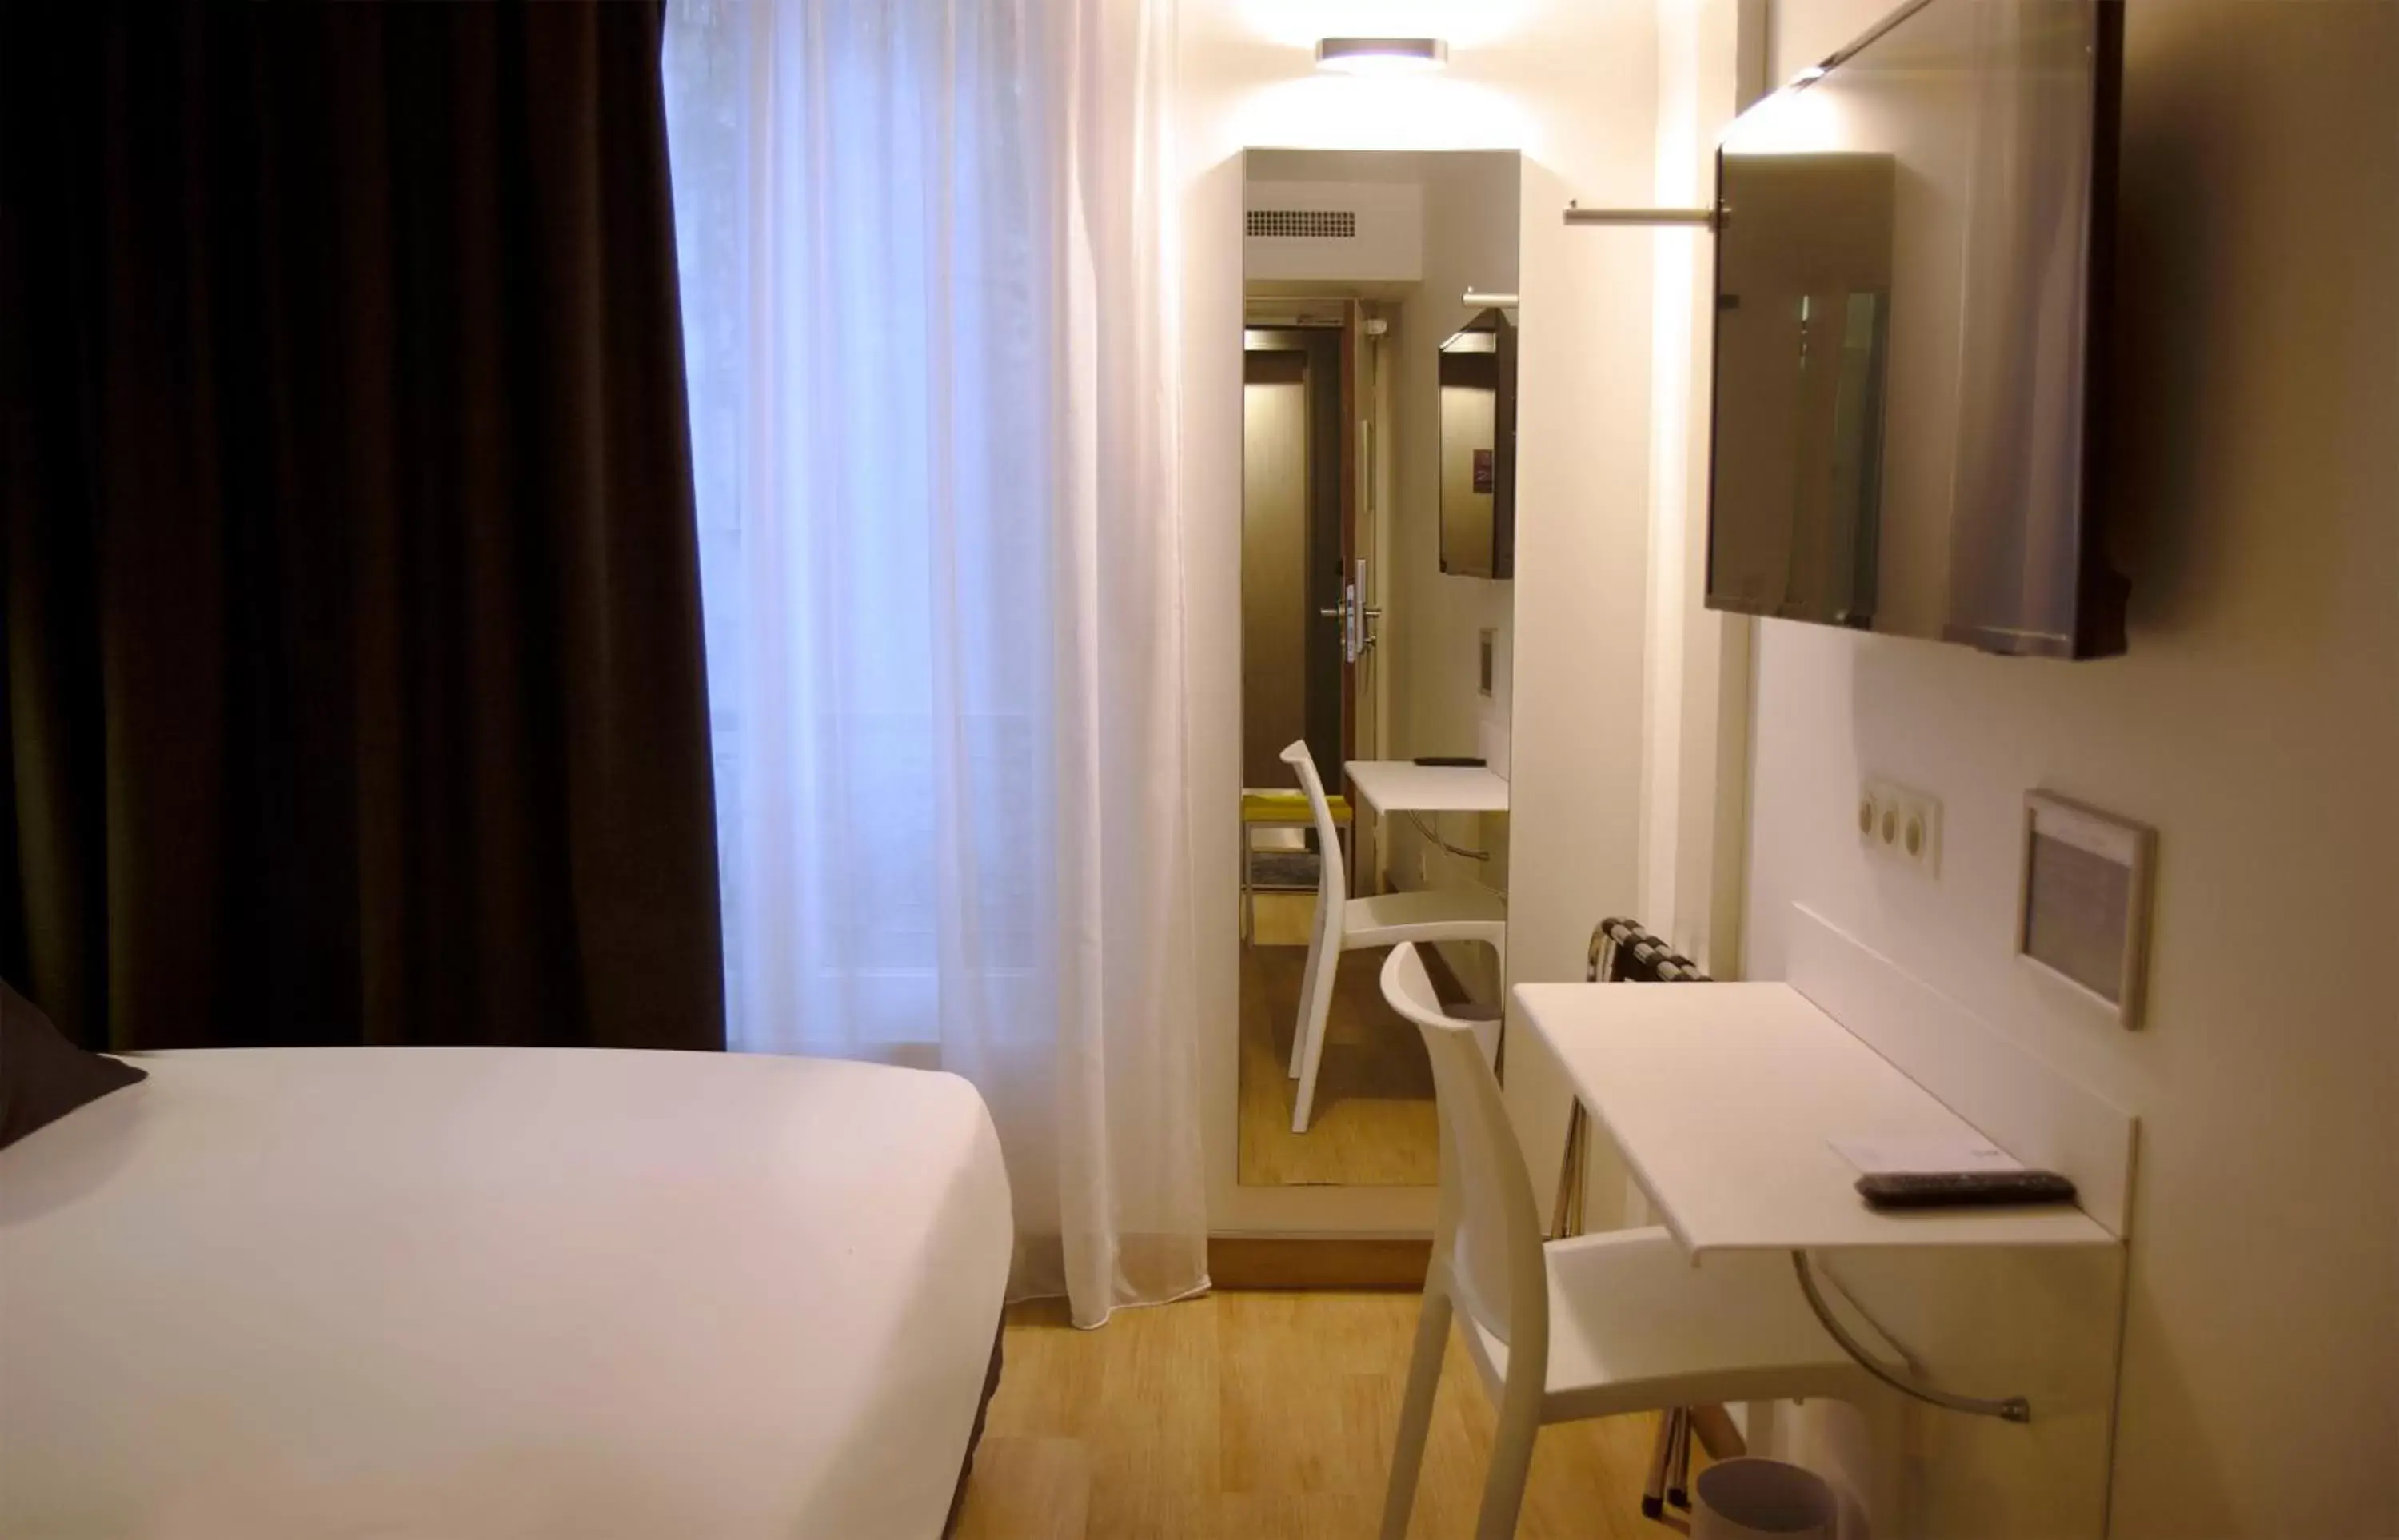 Bedroom, TV/Entertainment Center in Best Western Hotel Le Montparnasse